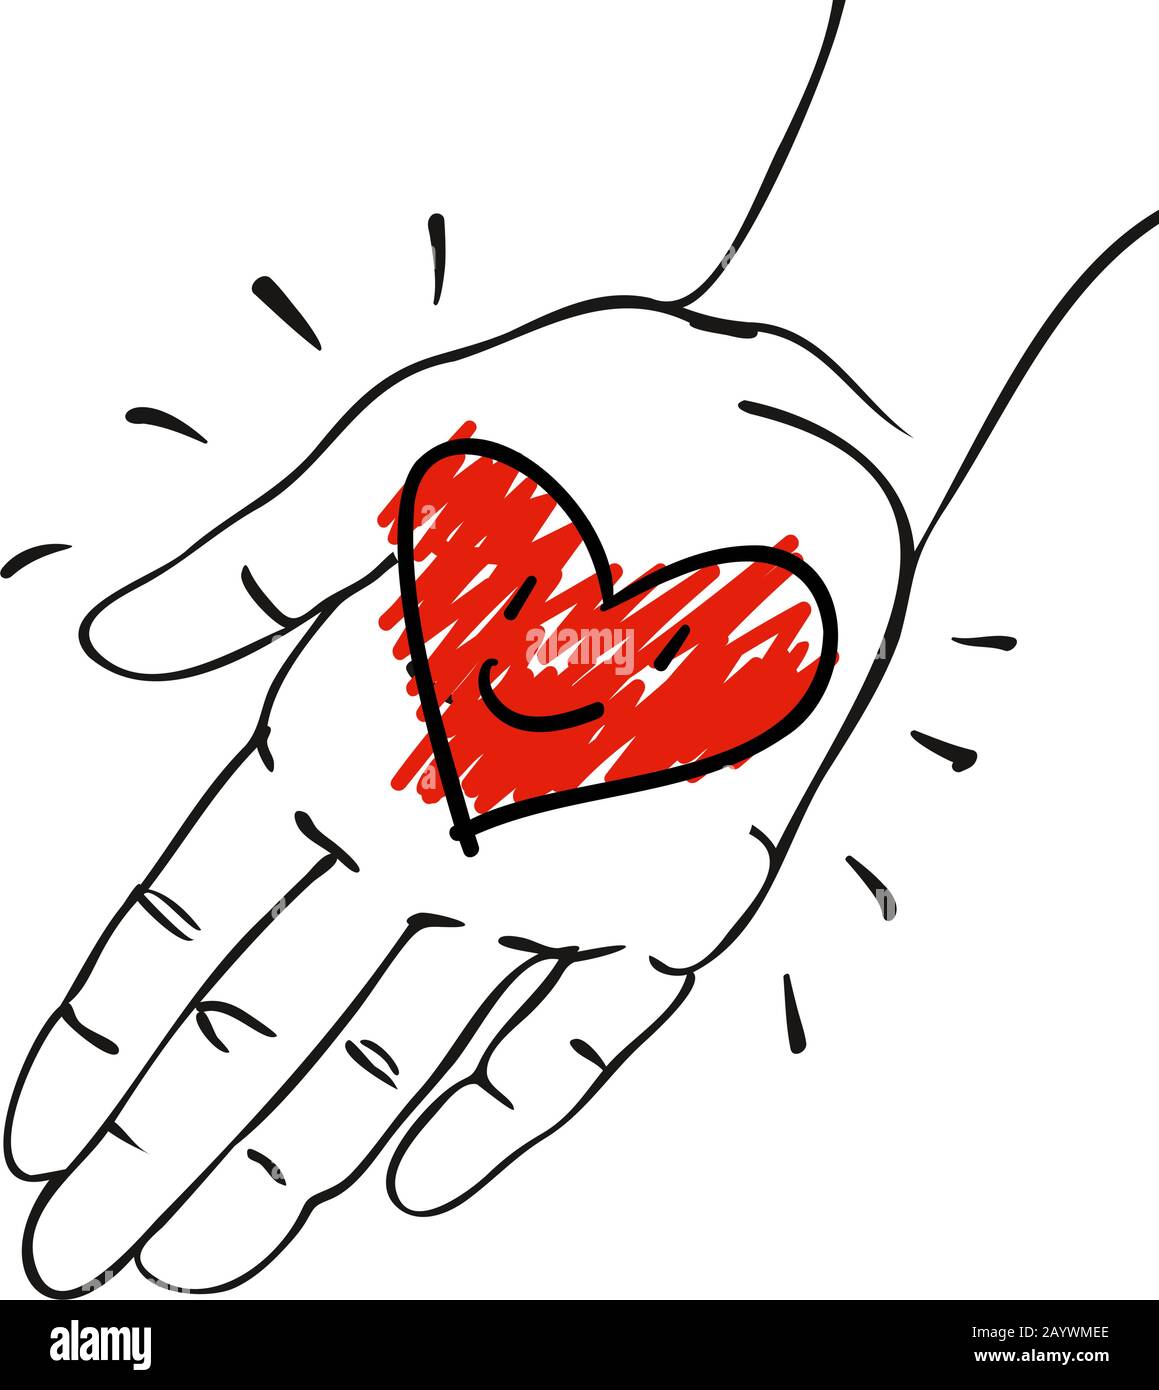 Geben Sie ihm das Herz - Hand mit dekorativer rot-rosafarbener Herz - handgezeichnete Vektorgrafiken für Banner, Karten Stock Vektor